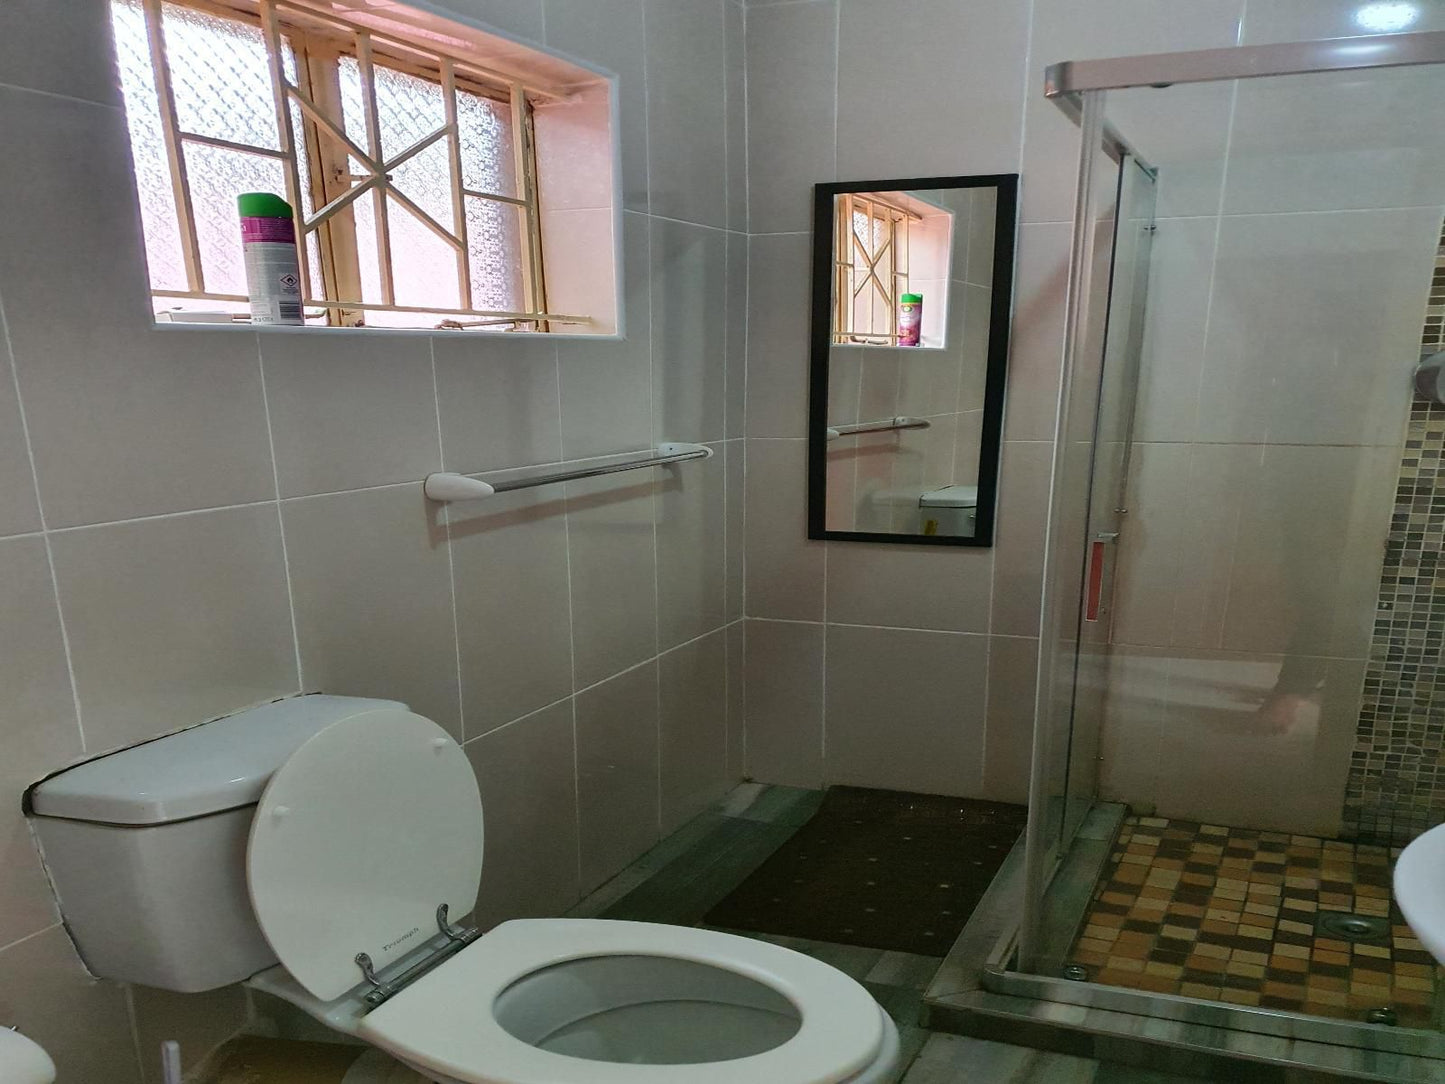 R S Gardens Thohoyandou Limpopo Province South Africa Bathroom